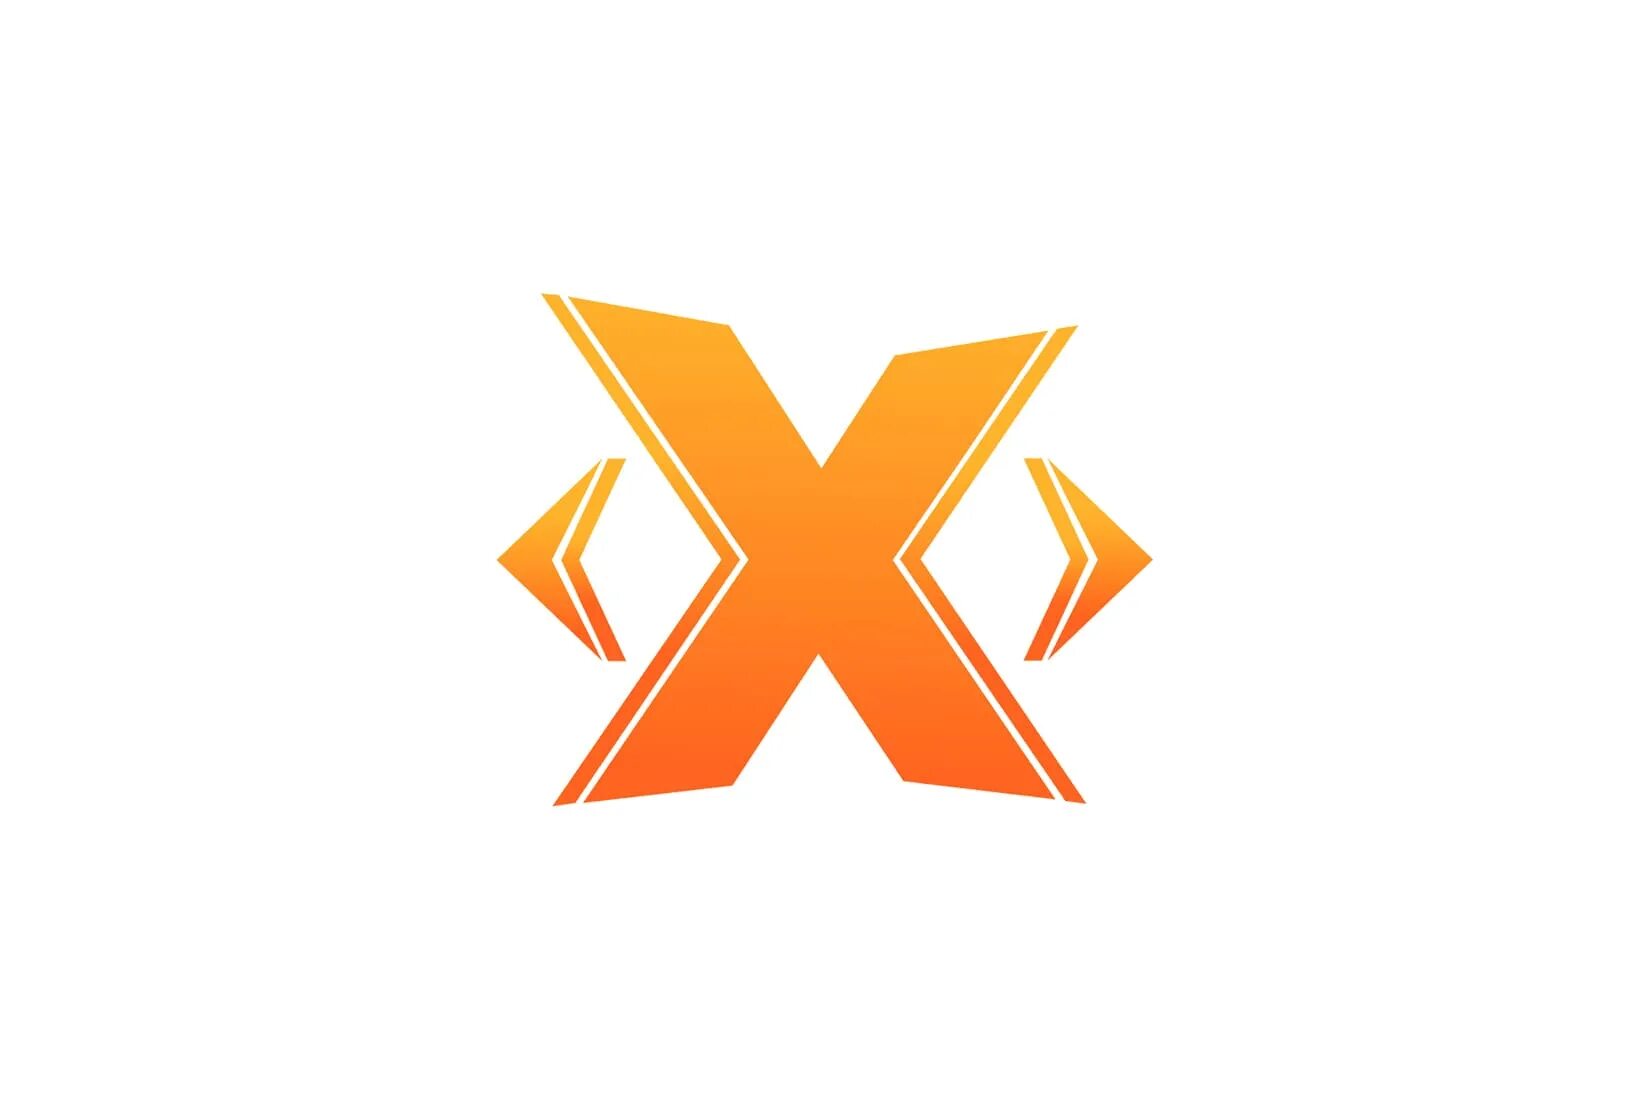 Логотип x. Табак Икс. Икс картинка. 3 Икса. Аватарка икса